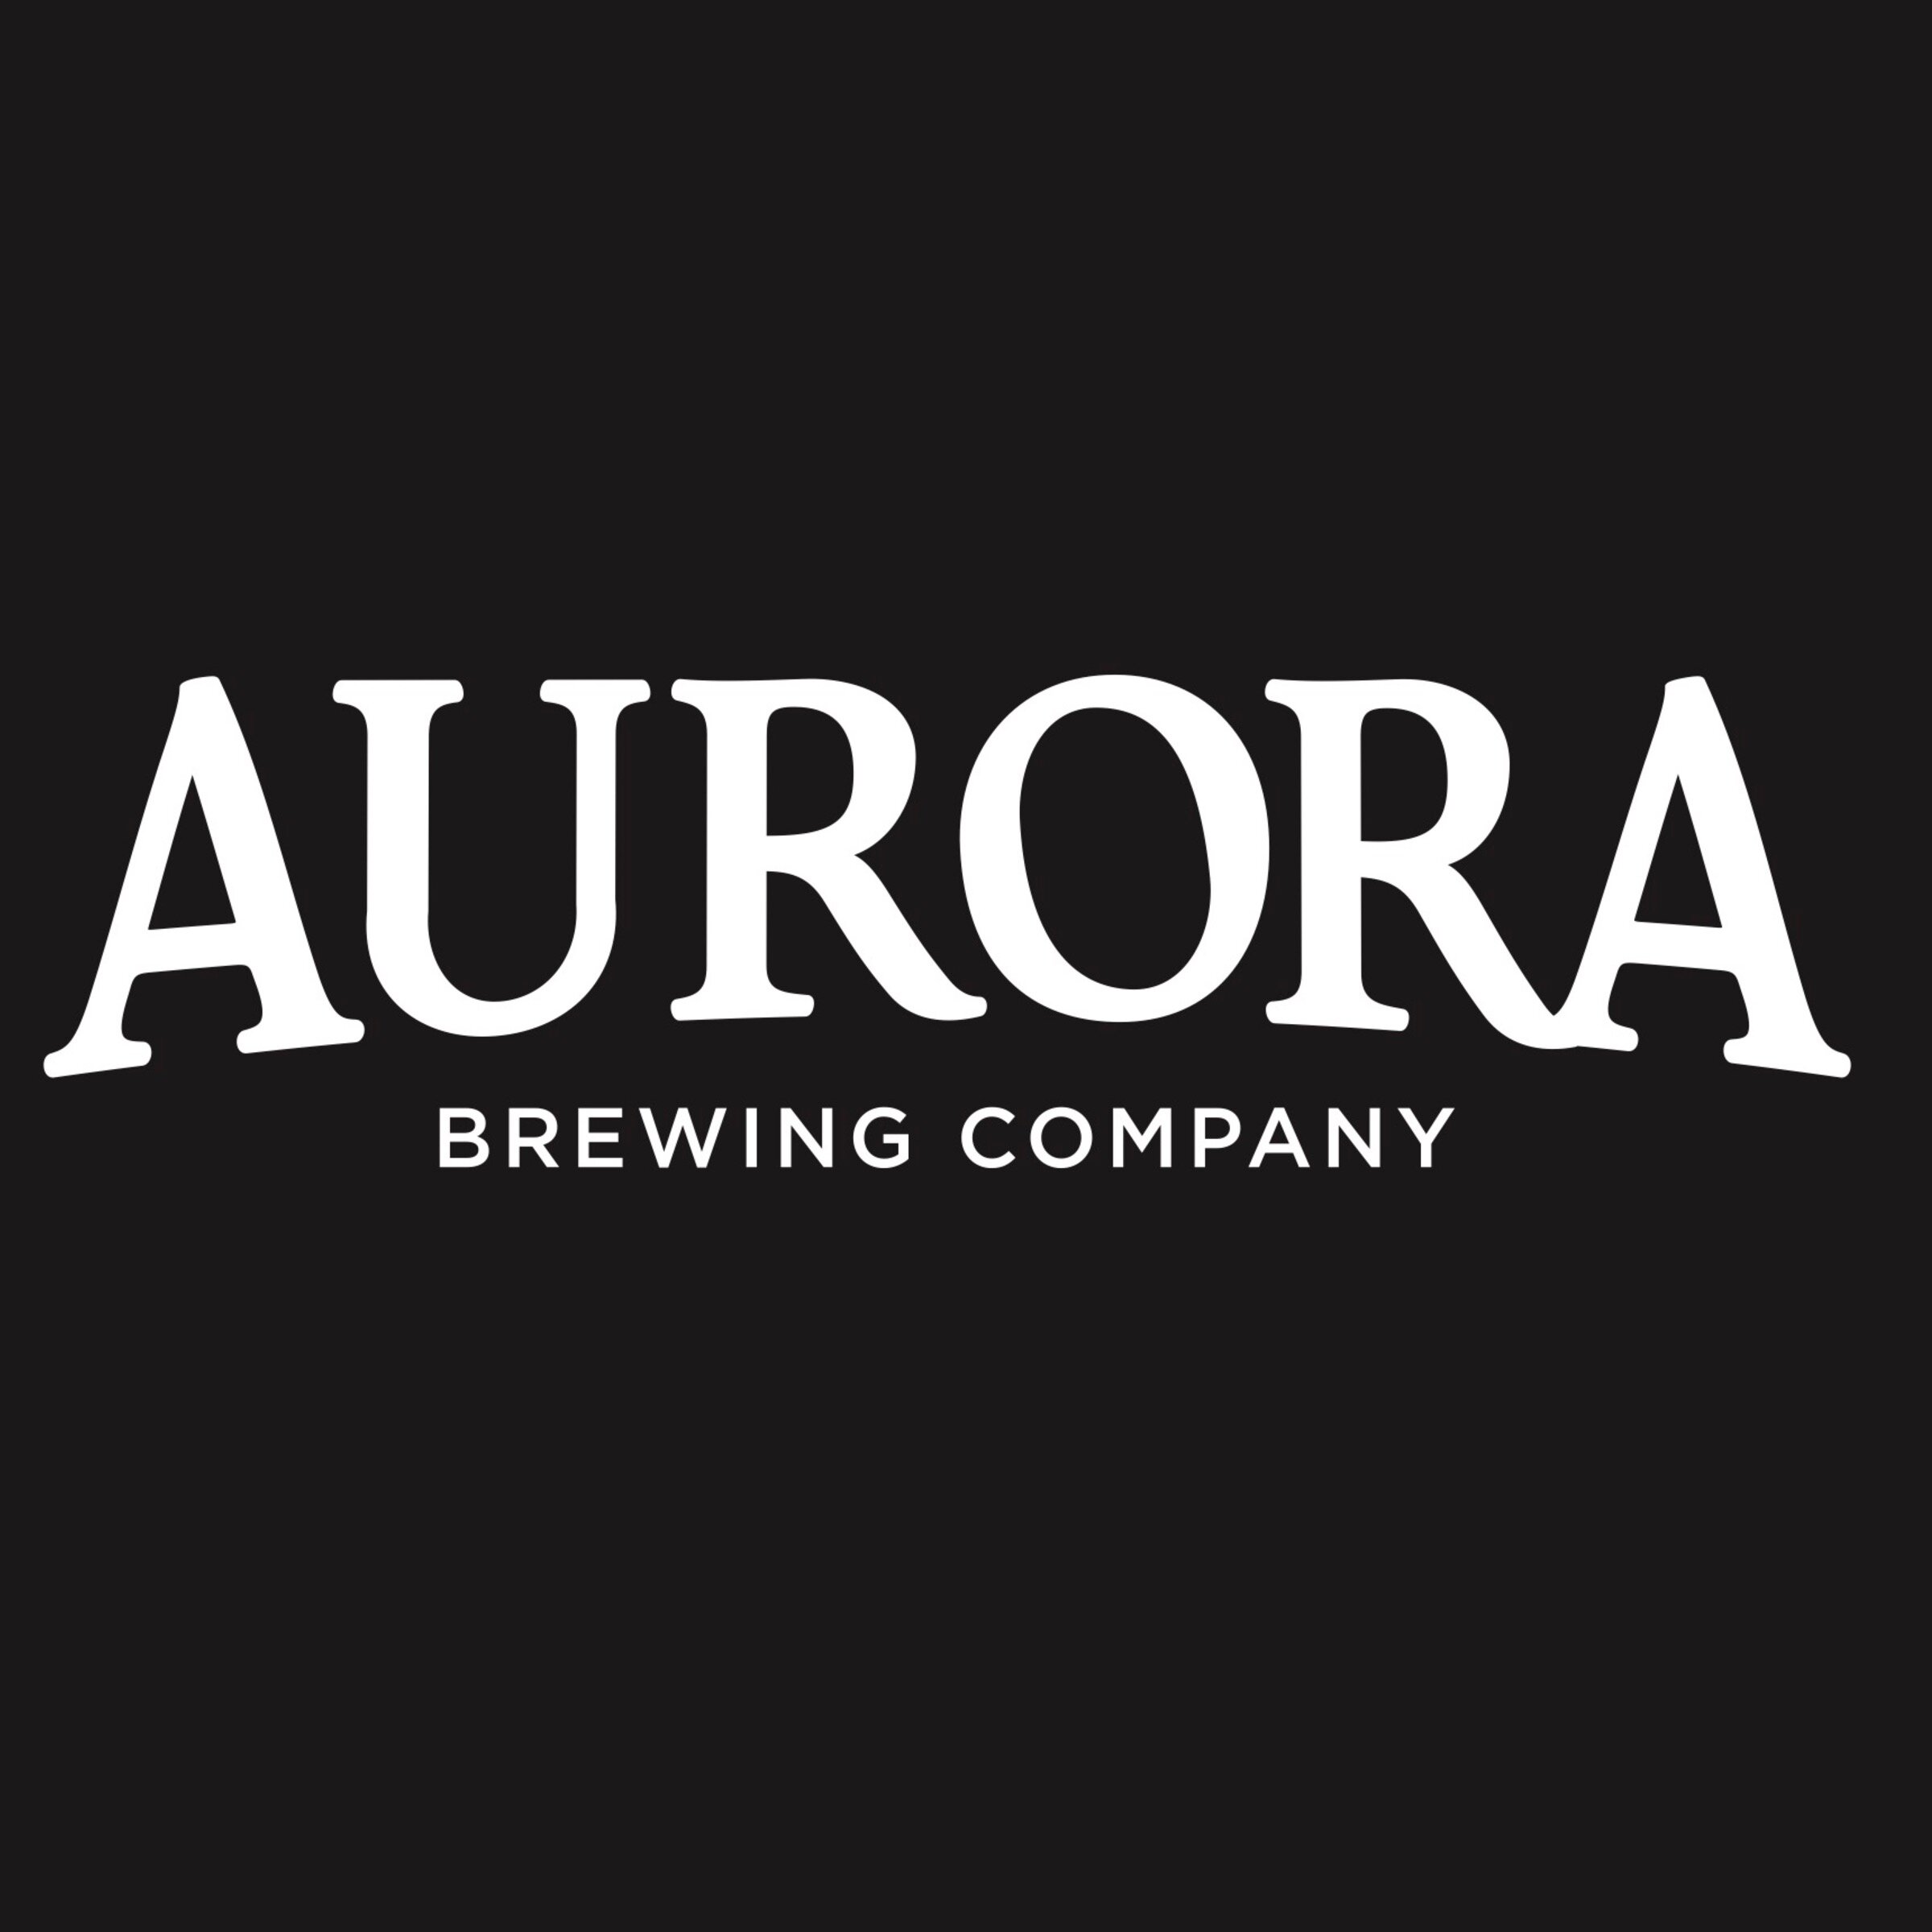 Aurora Brewing Co.